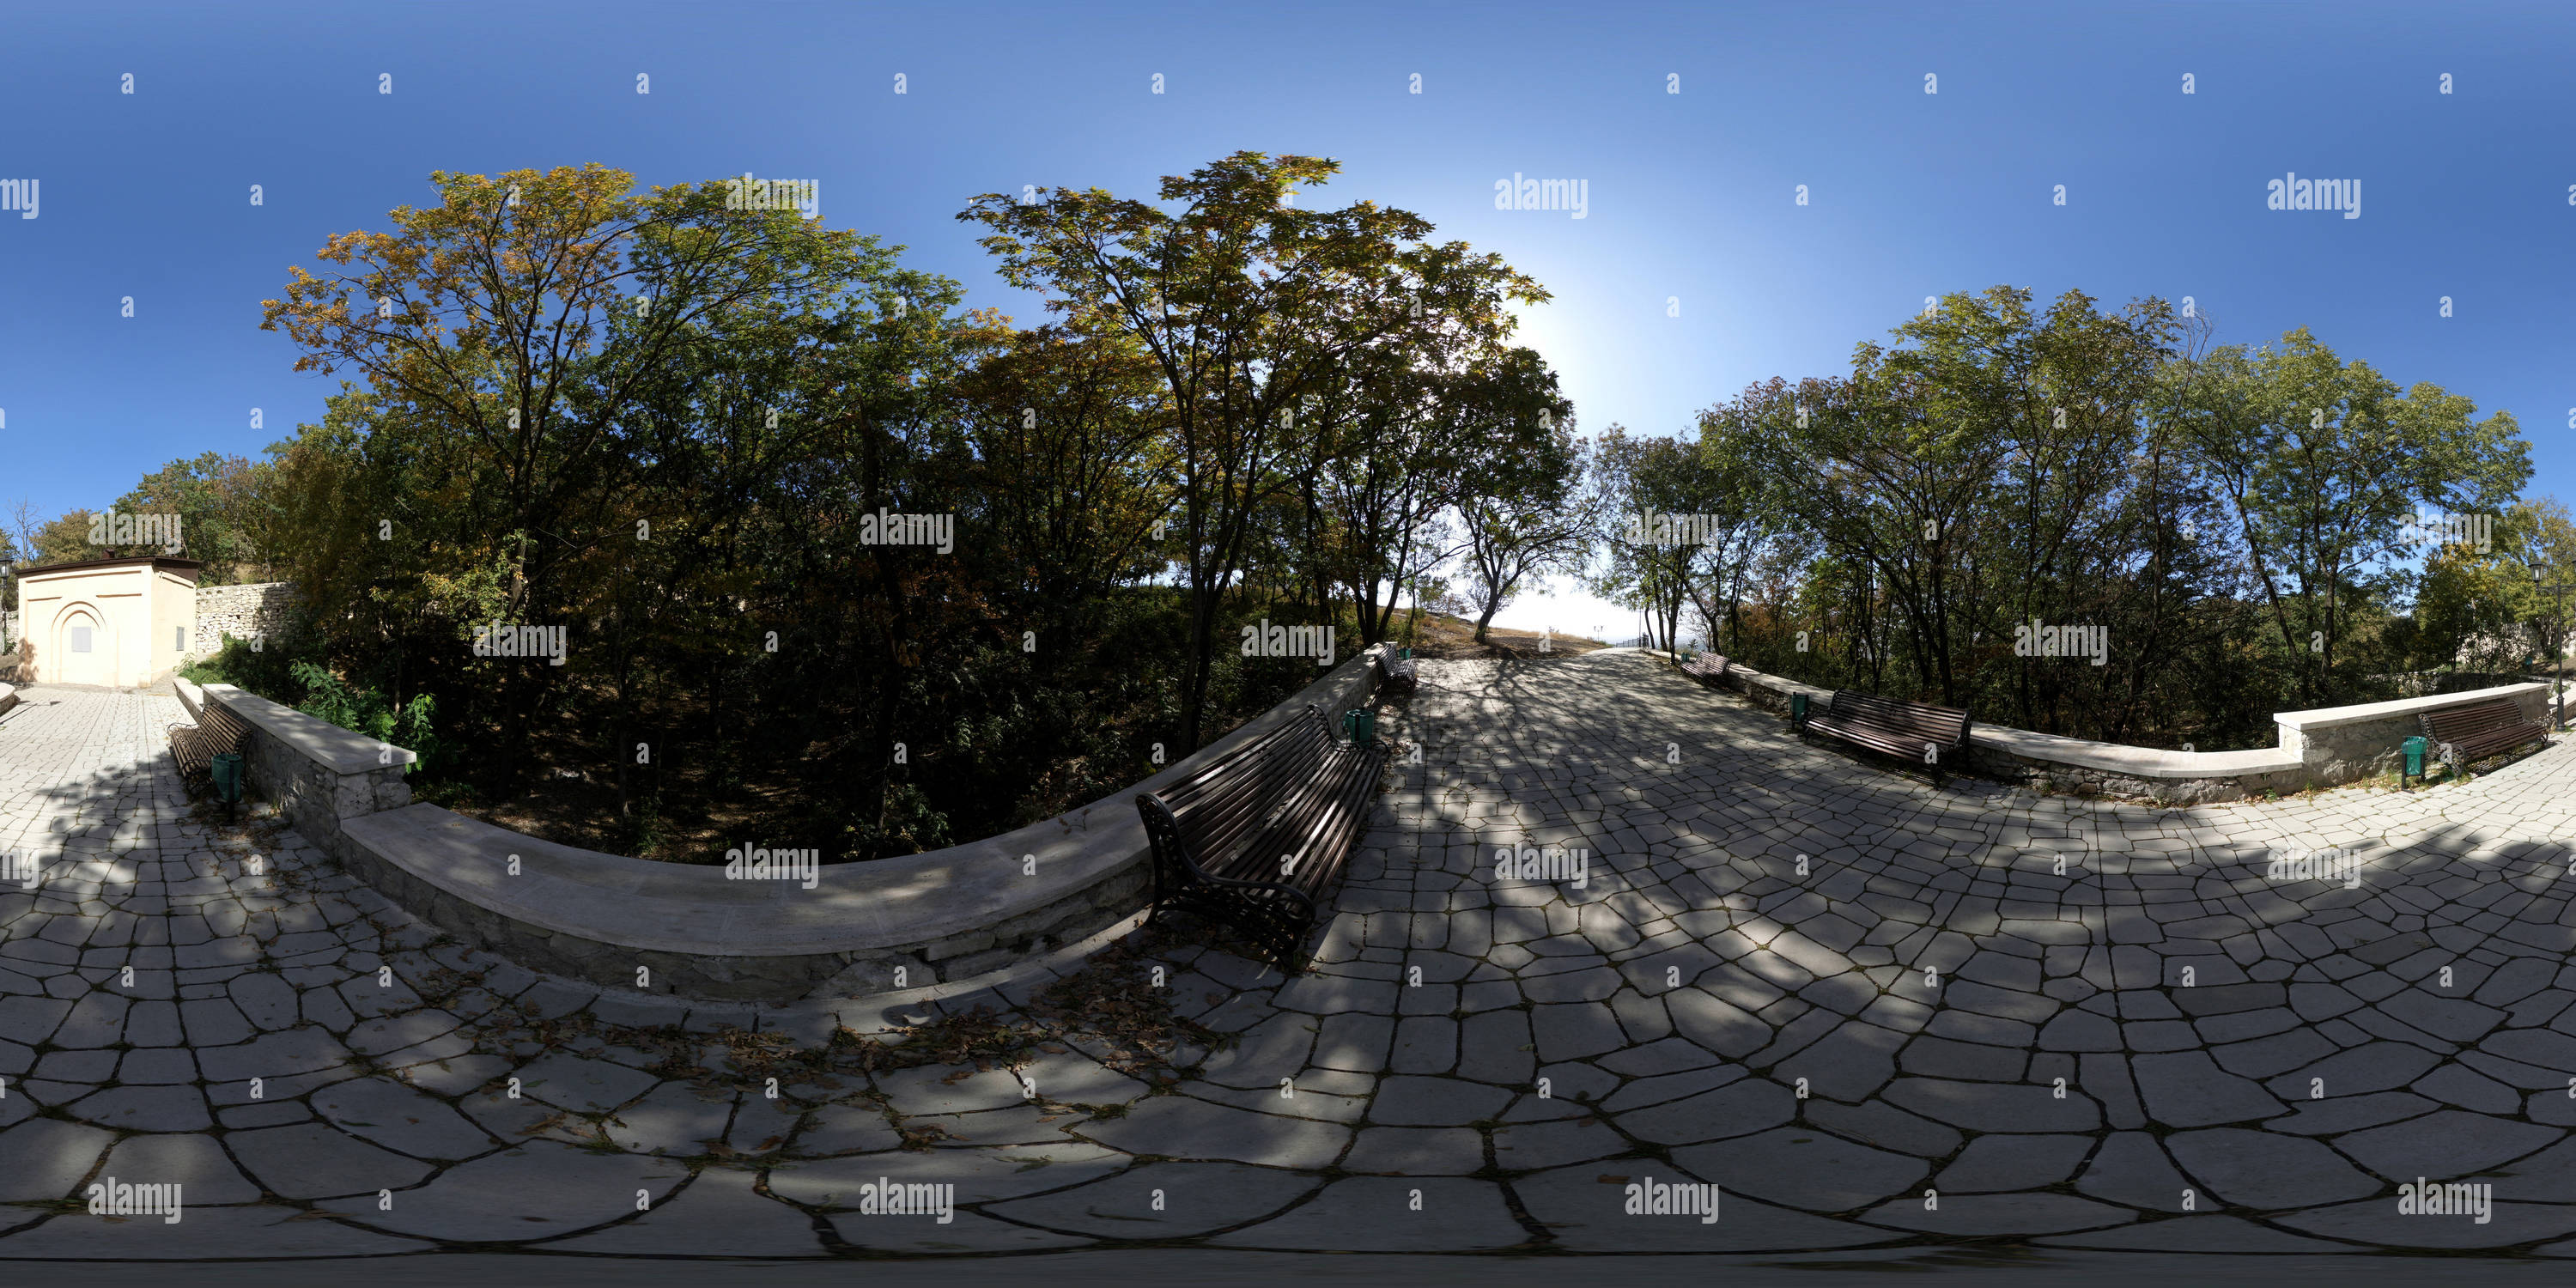 Visualizzazione panoramica a 360 gradi di на Чертовом мосту 2020